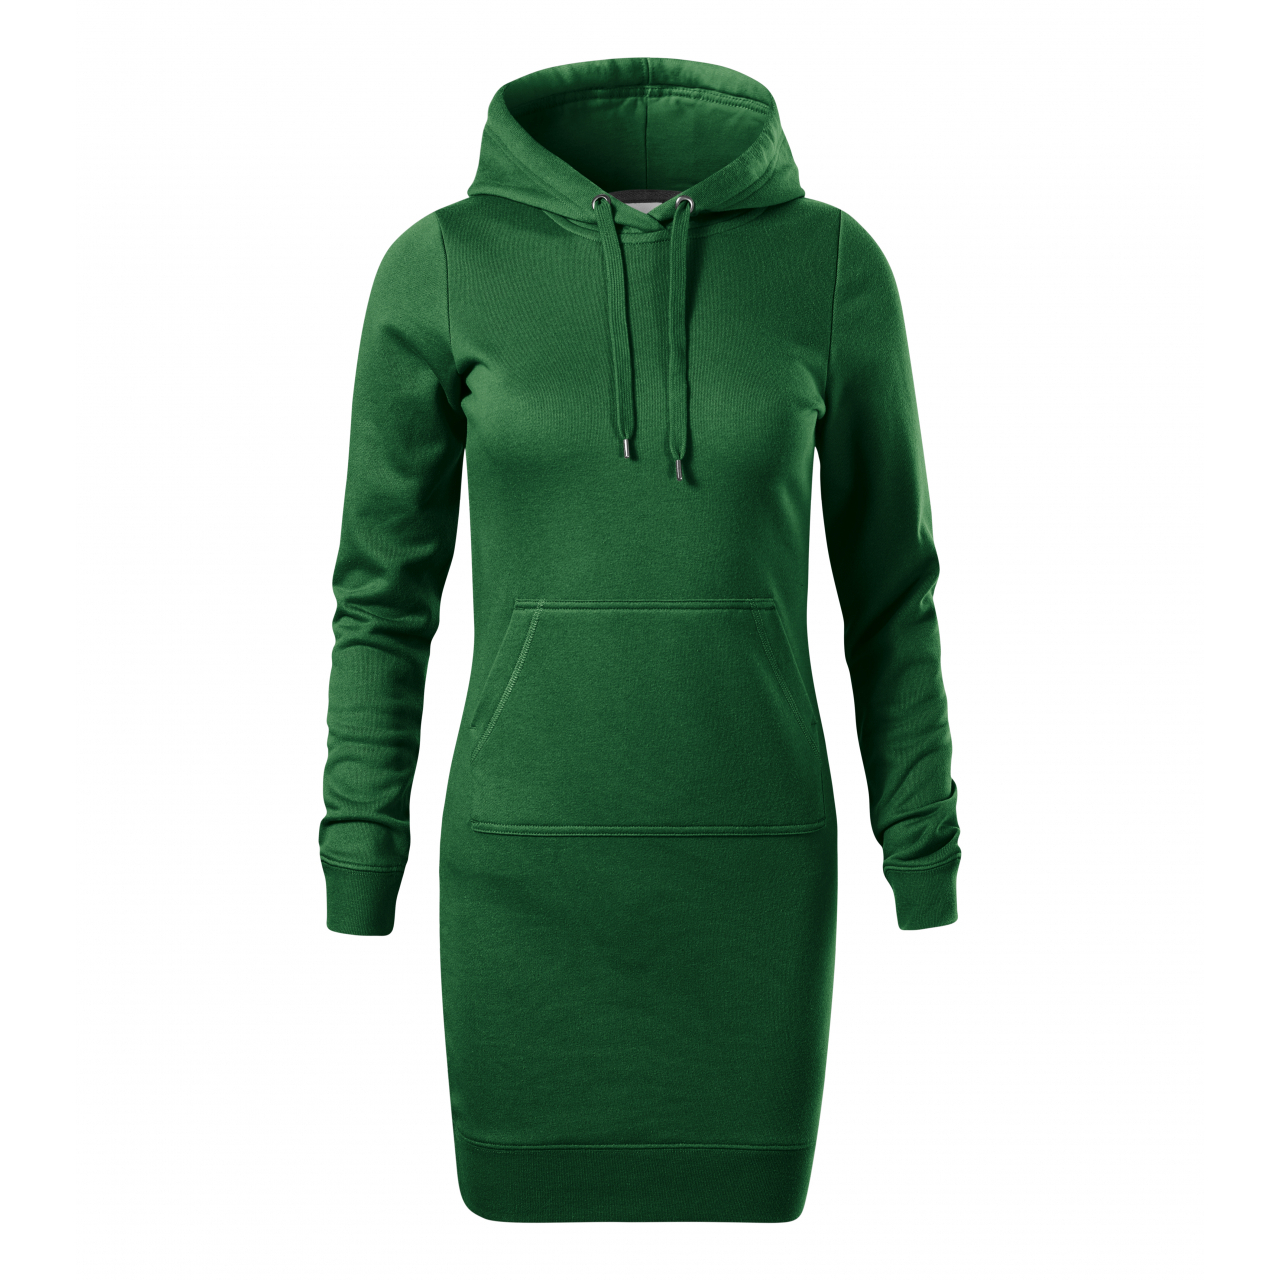 Šaty dámské Malfini Snap - tmavě zelené, L